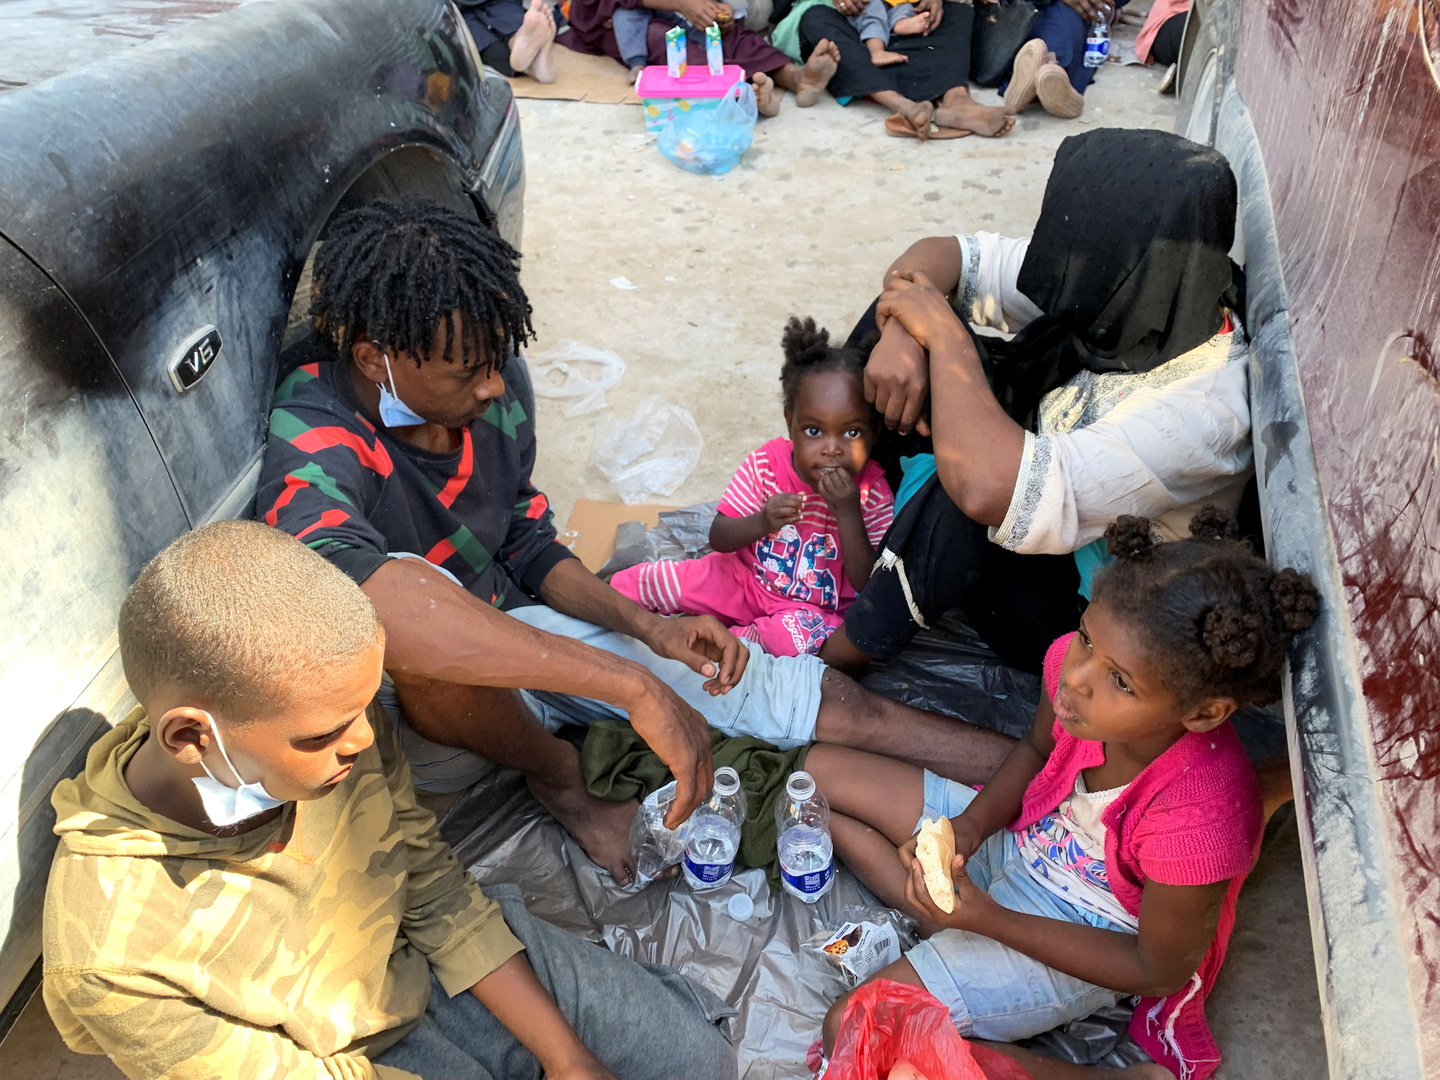 هيومن رايتس ووتش: طالبو اللجوء واللاجئون في ليبيا بحاجة إلى مساعدة طارئة